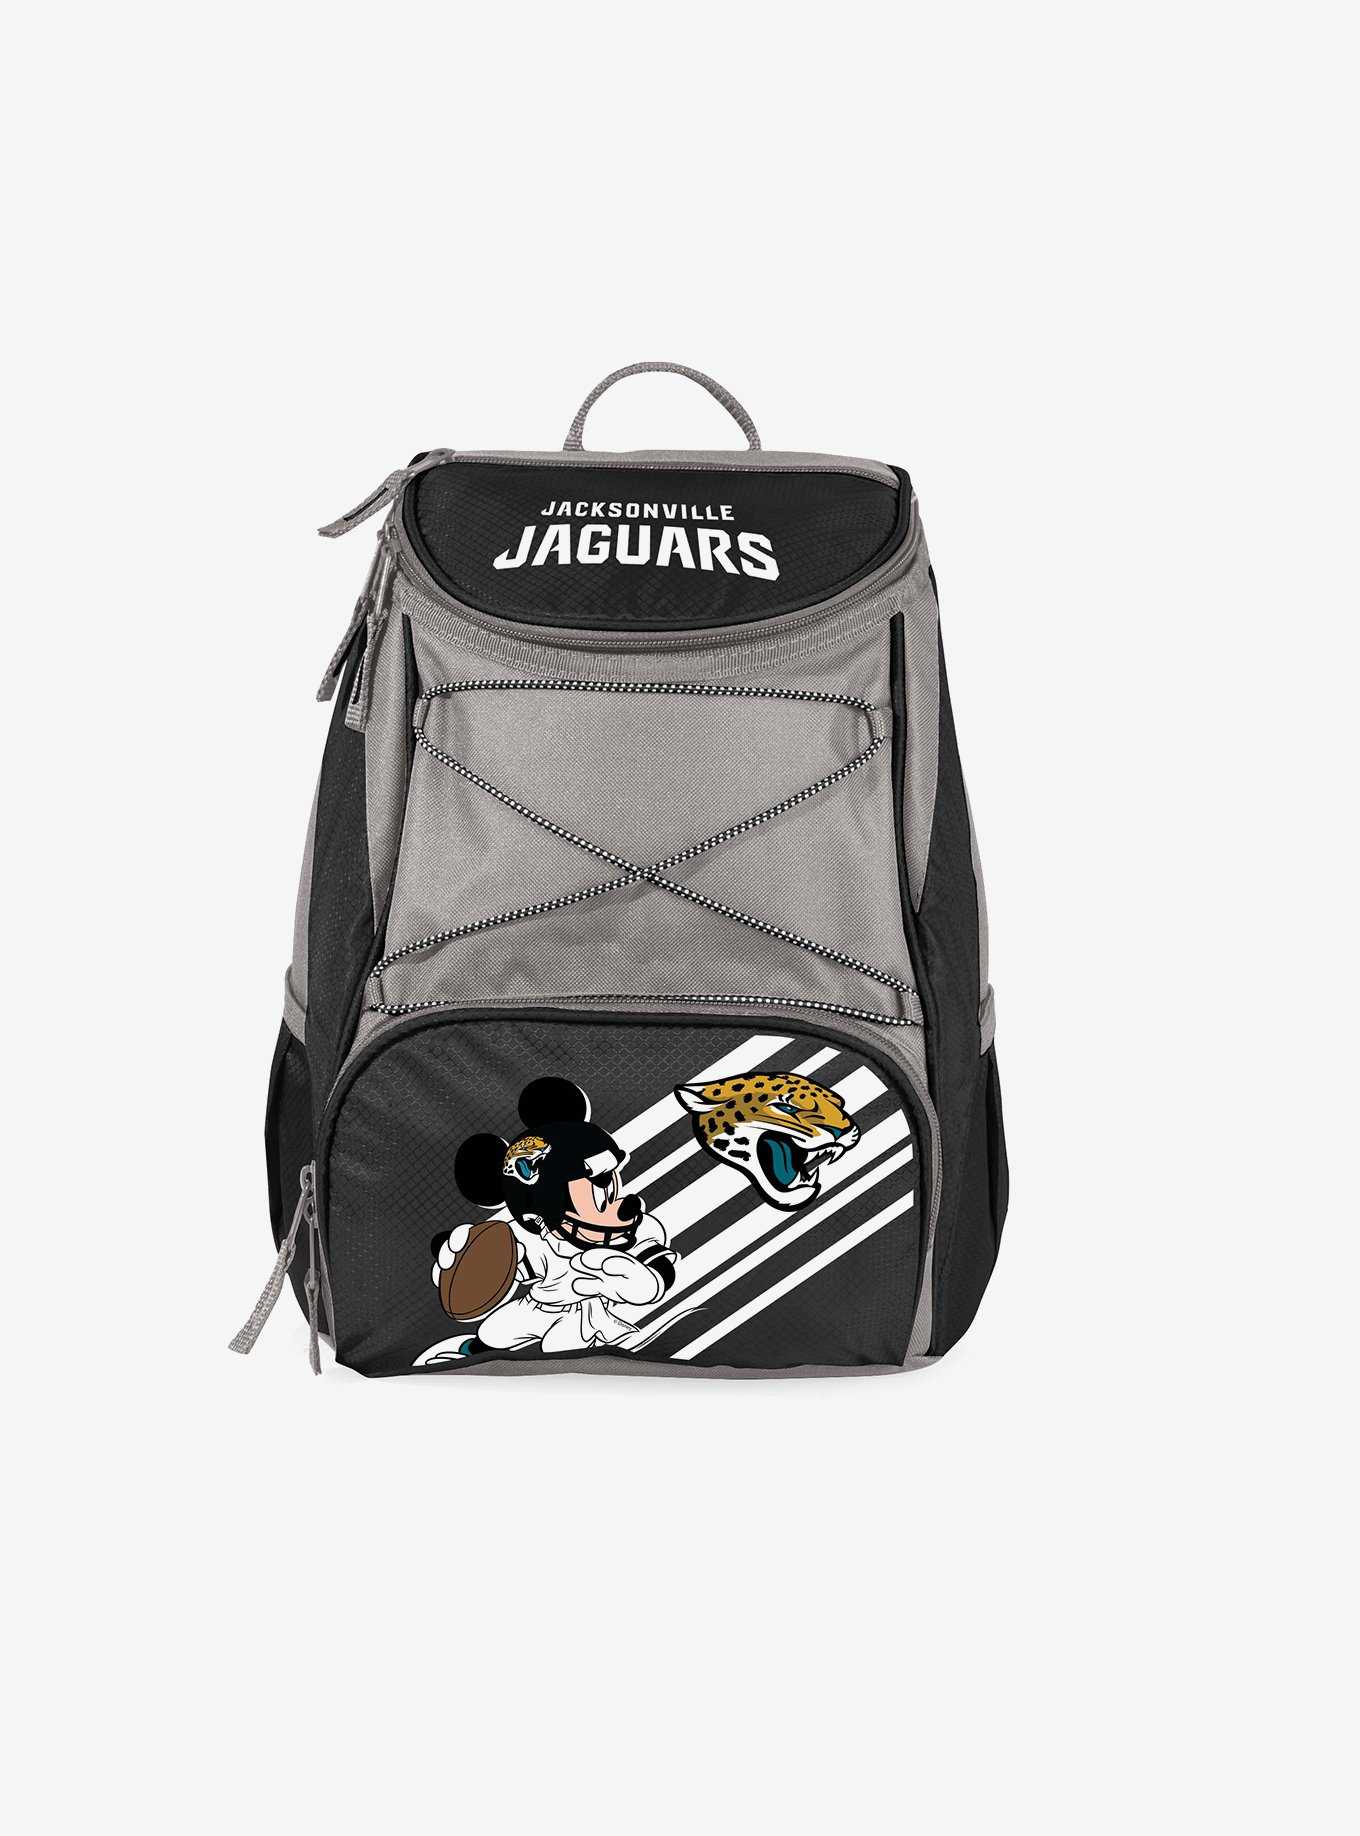 Disney Mickey Mouse NFL JAX Jaguars Cooler Backpack, , hi-res